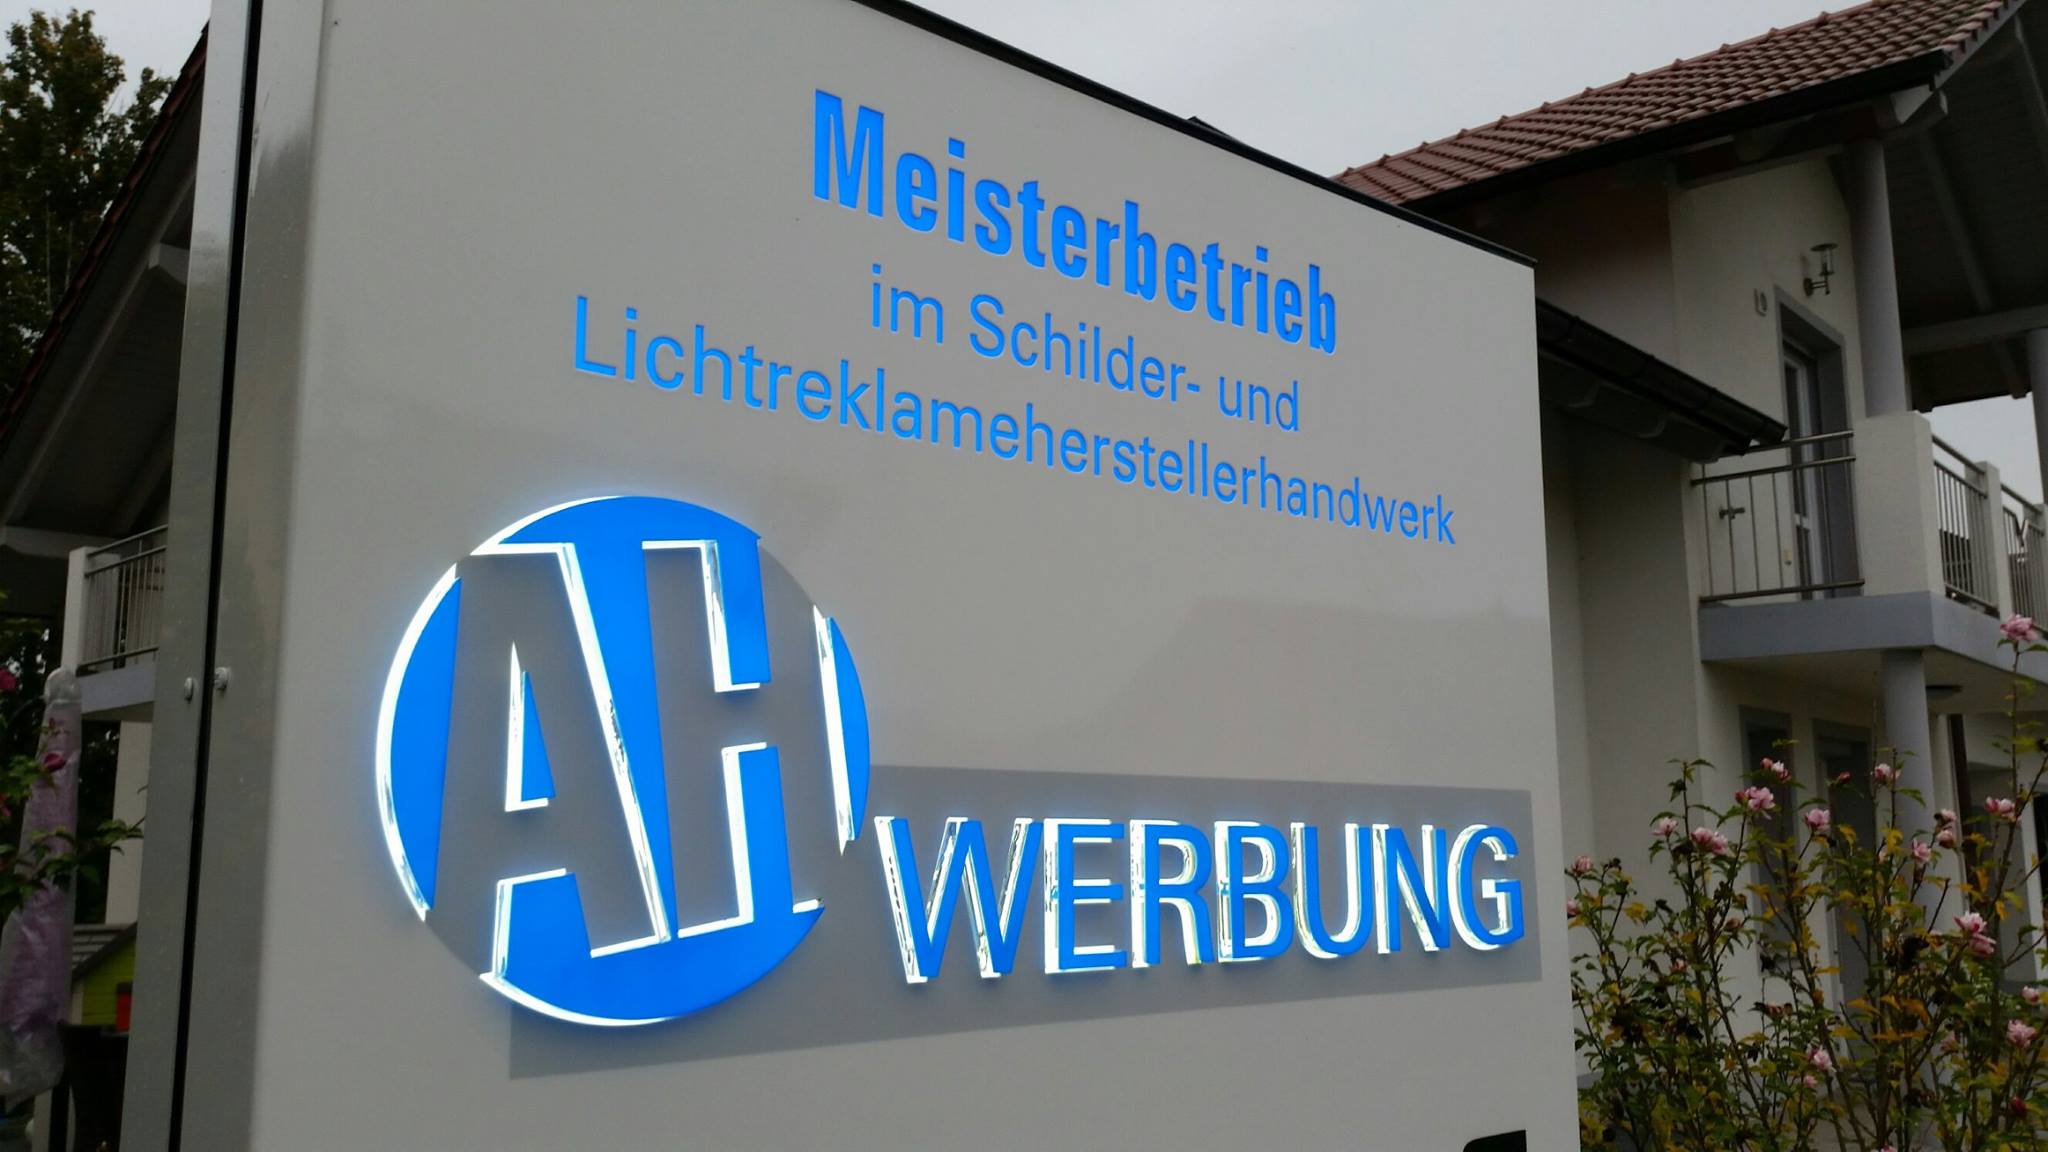 Firmenschild der Firma AH Werbung mit der Aufschrift Meisterbetrieb im Schilder- und Leuchtreklameherstellerhandwerk.
Darunter ist das Logo der Firma zu sehen.